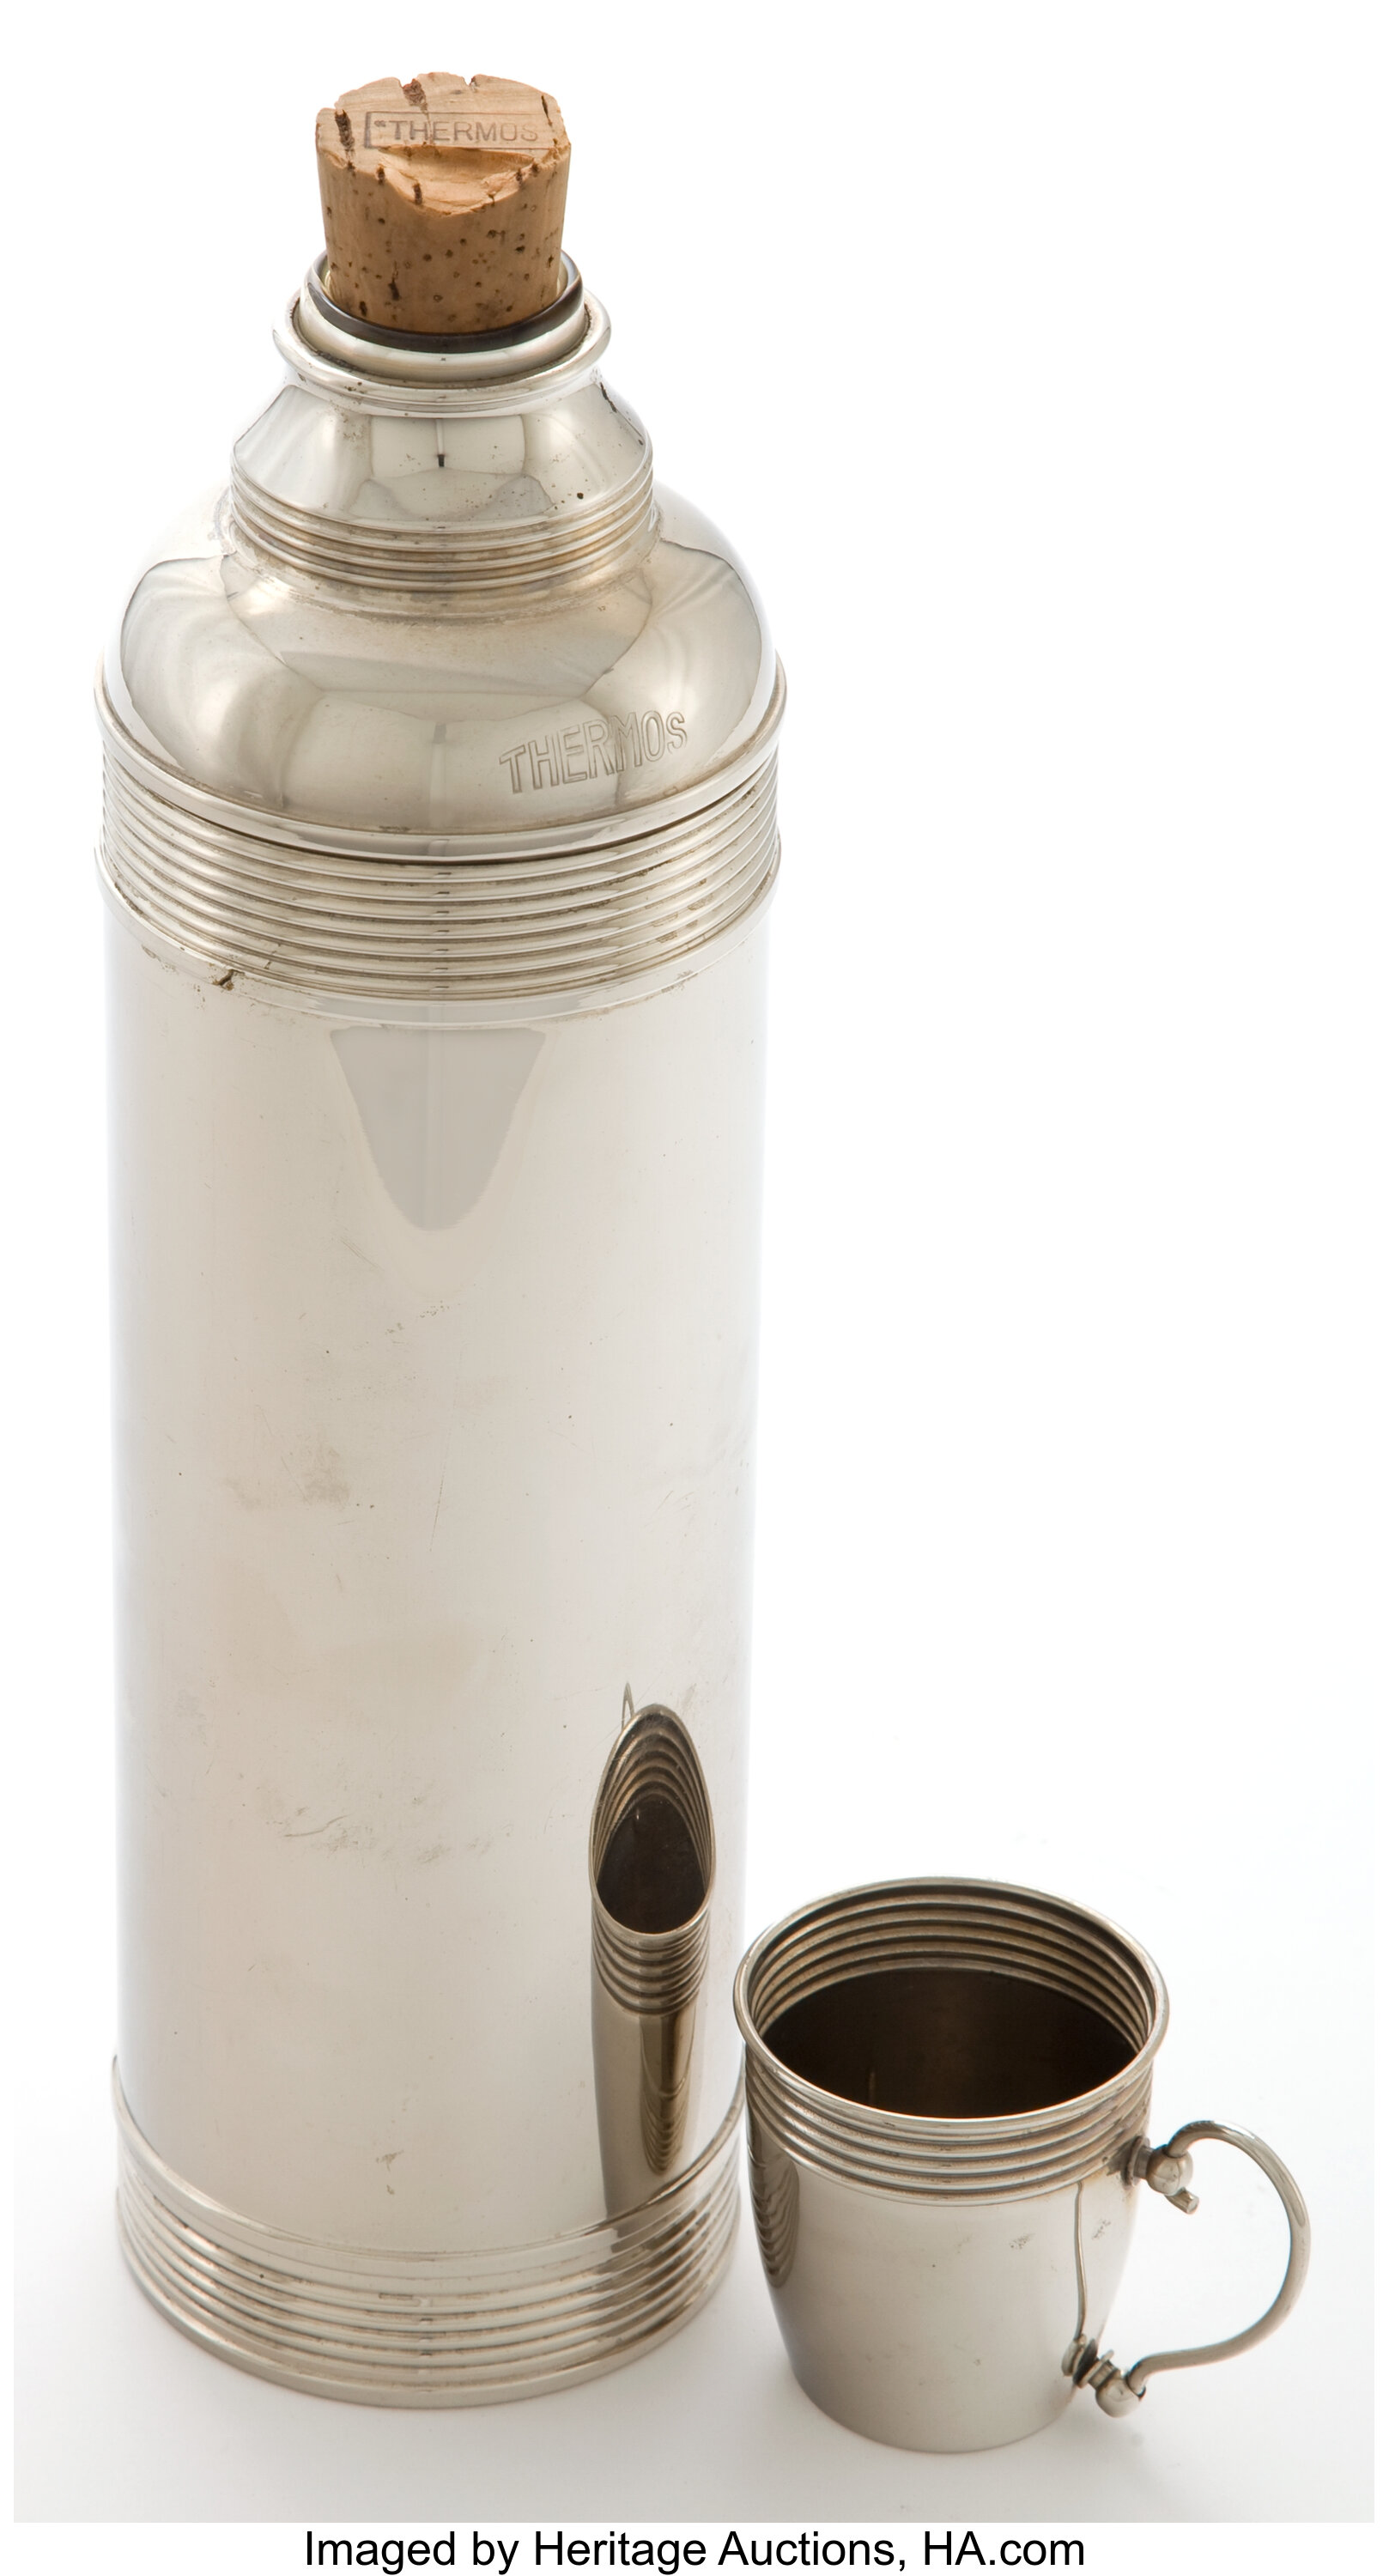 Sold at Auction: An Original HAROS Chromed Hot Drink Dispenser